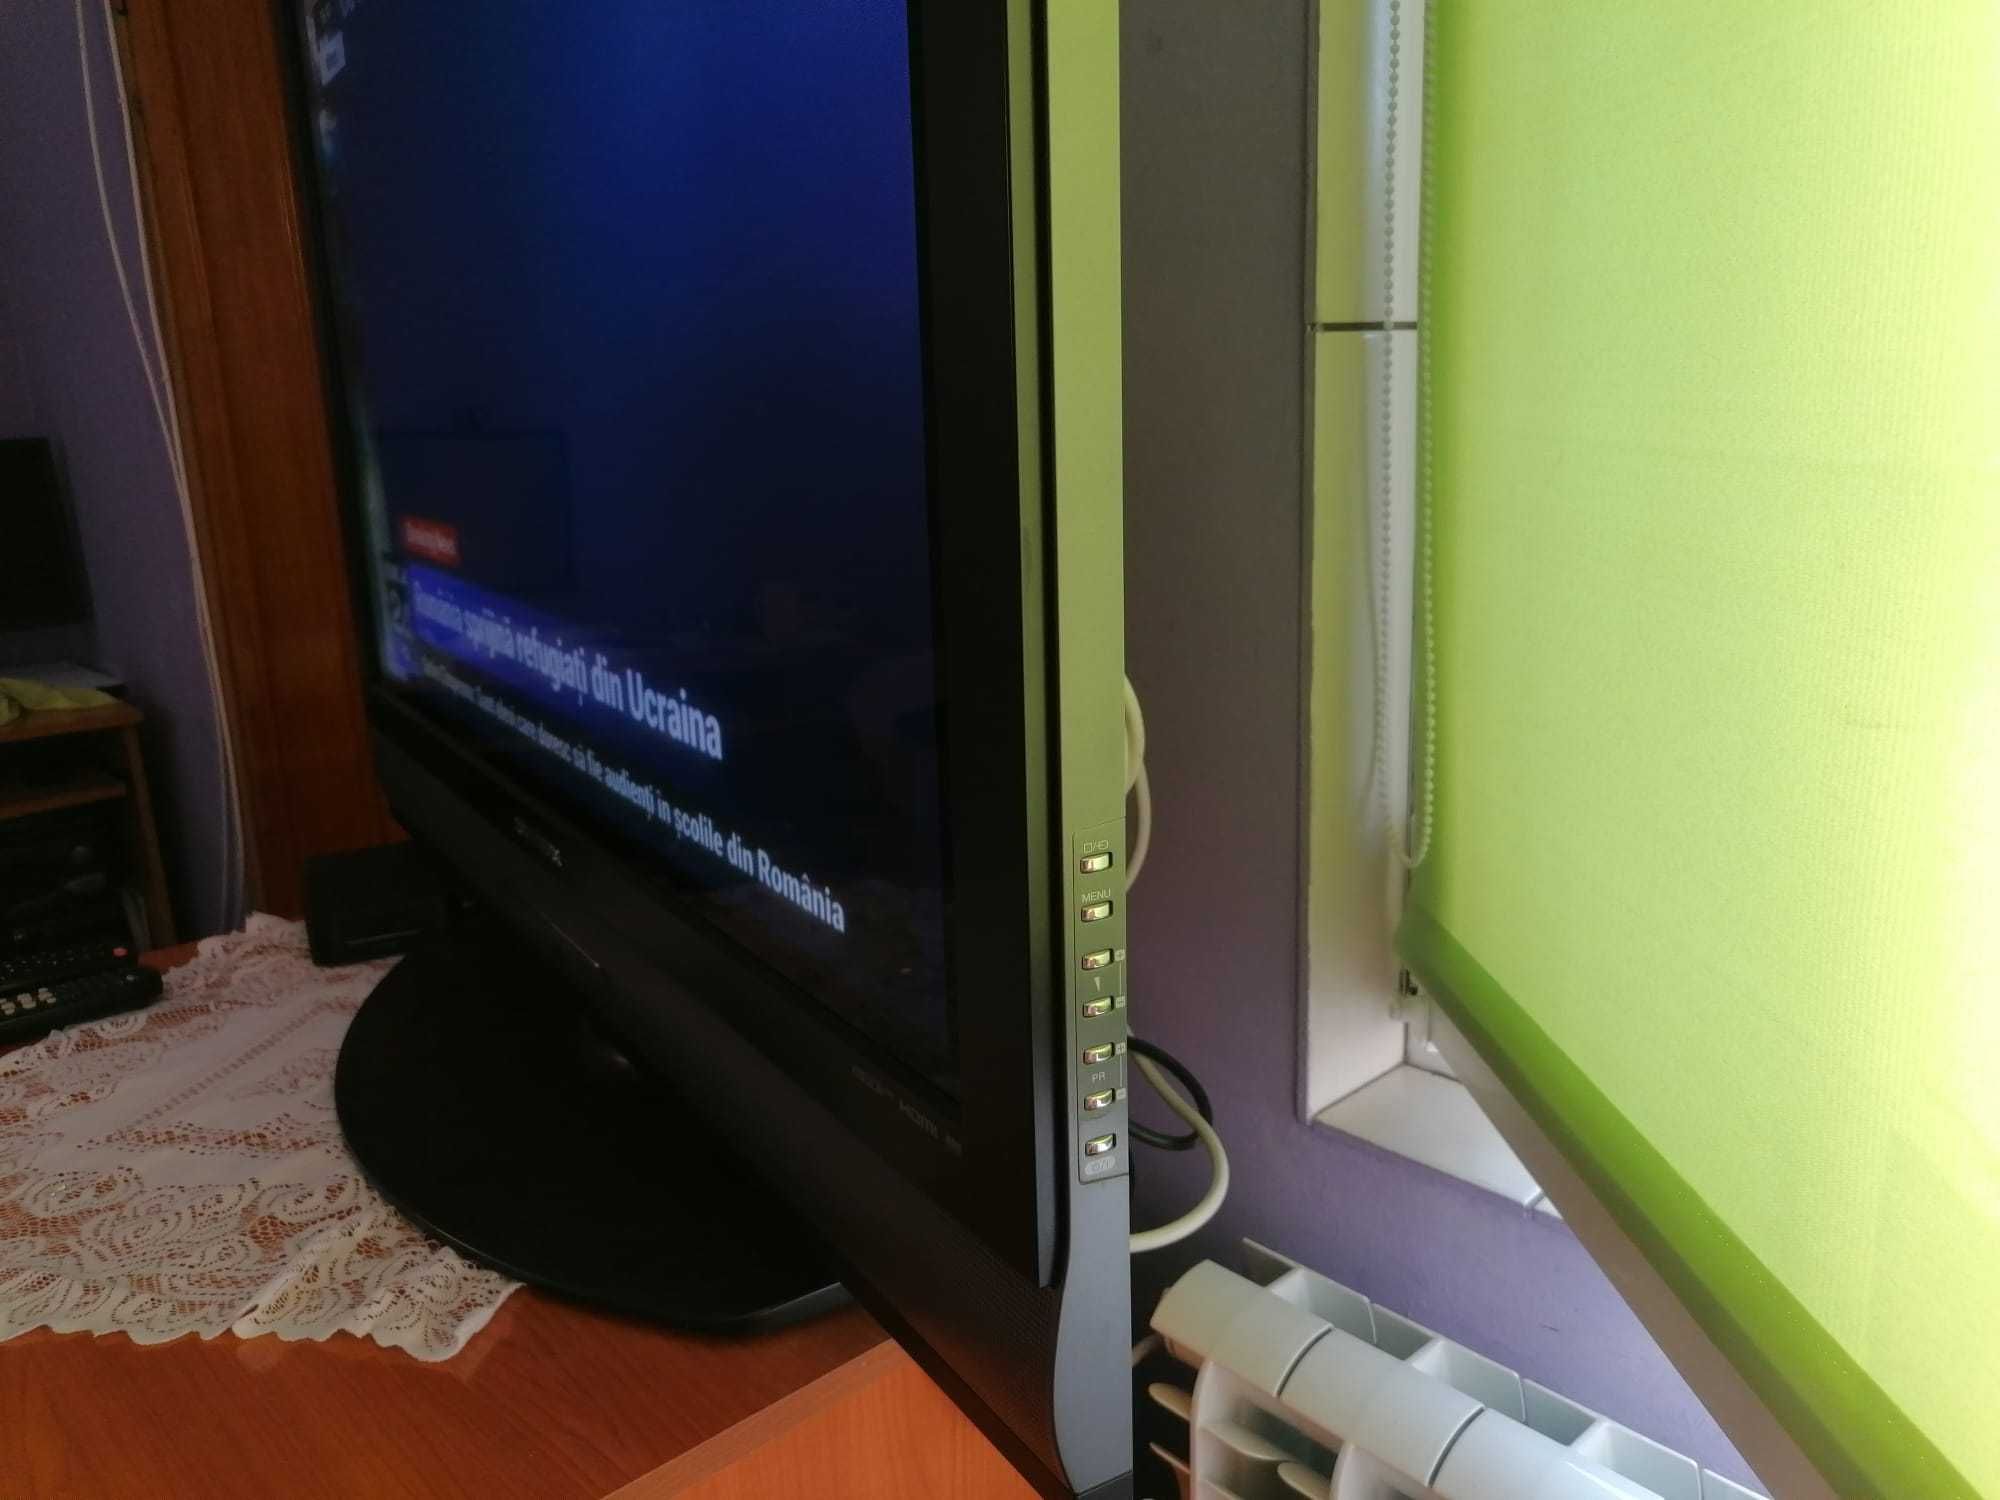 TV plasma Daewoo 42" - 107cm HD READY, nu este smart